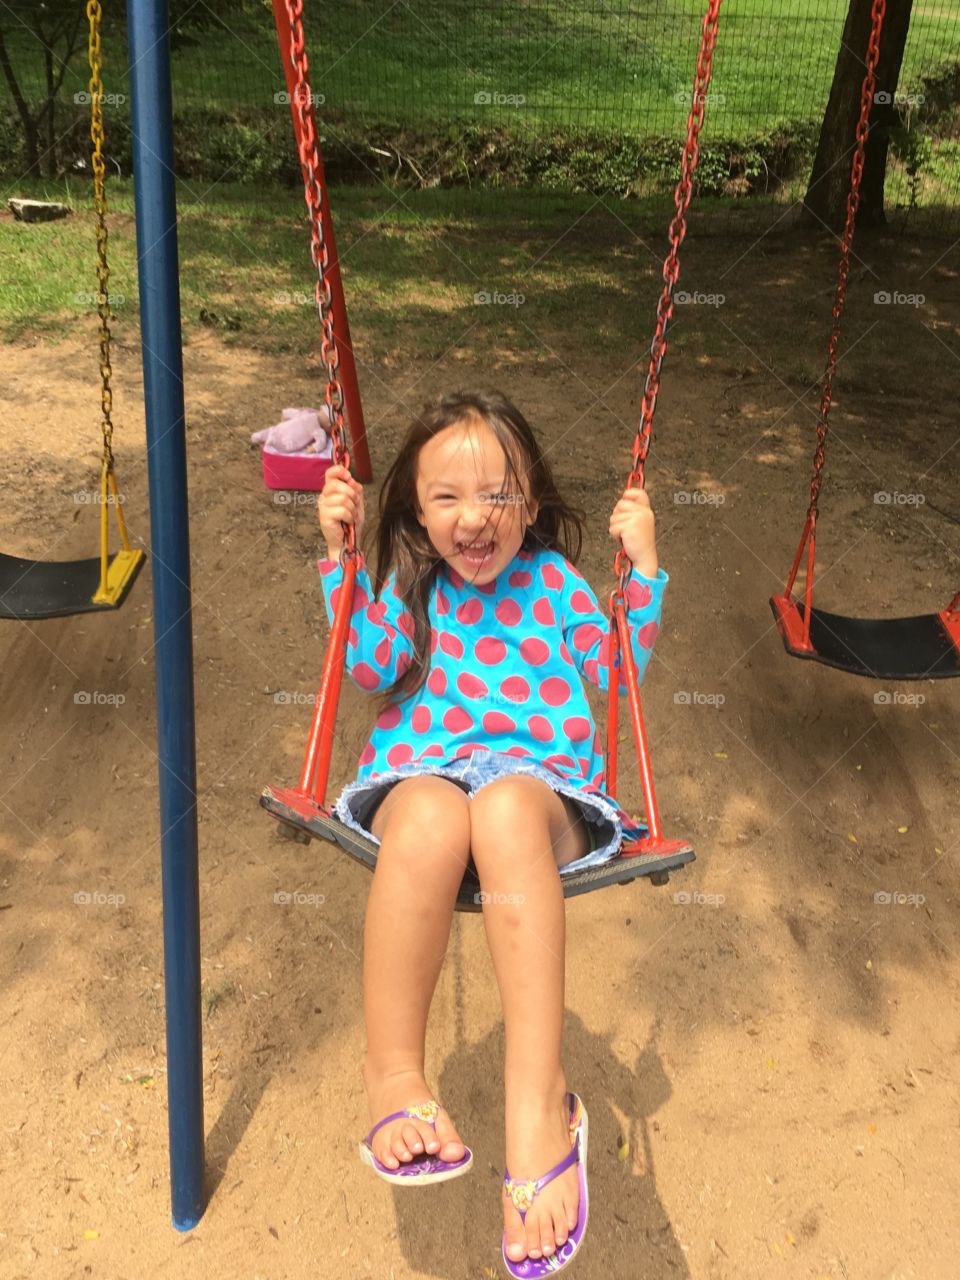 Girl on swing laughing 